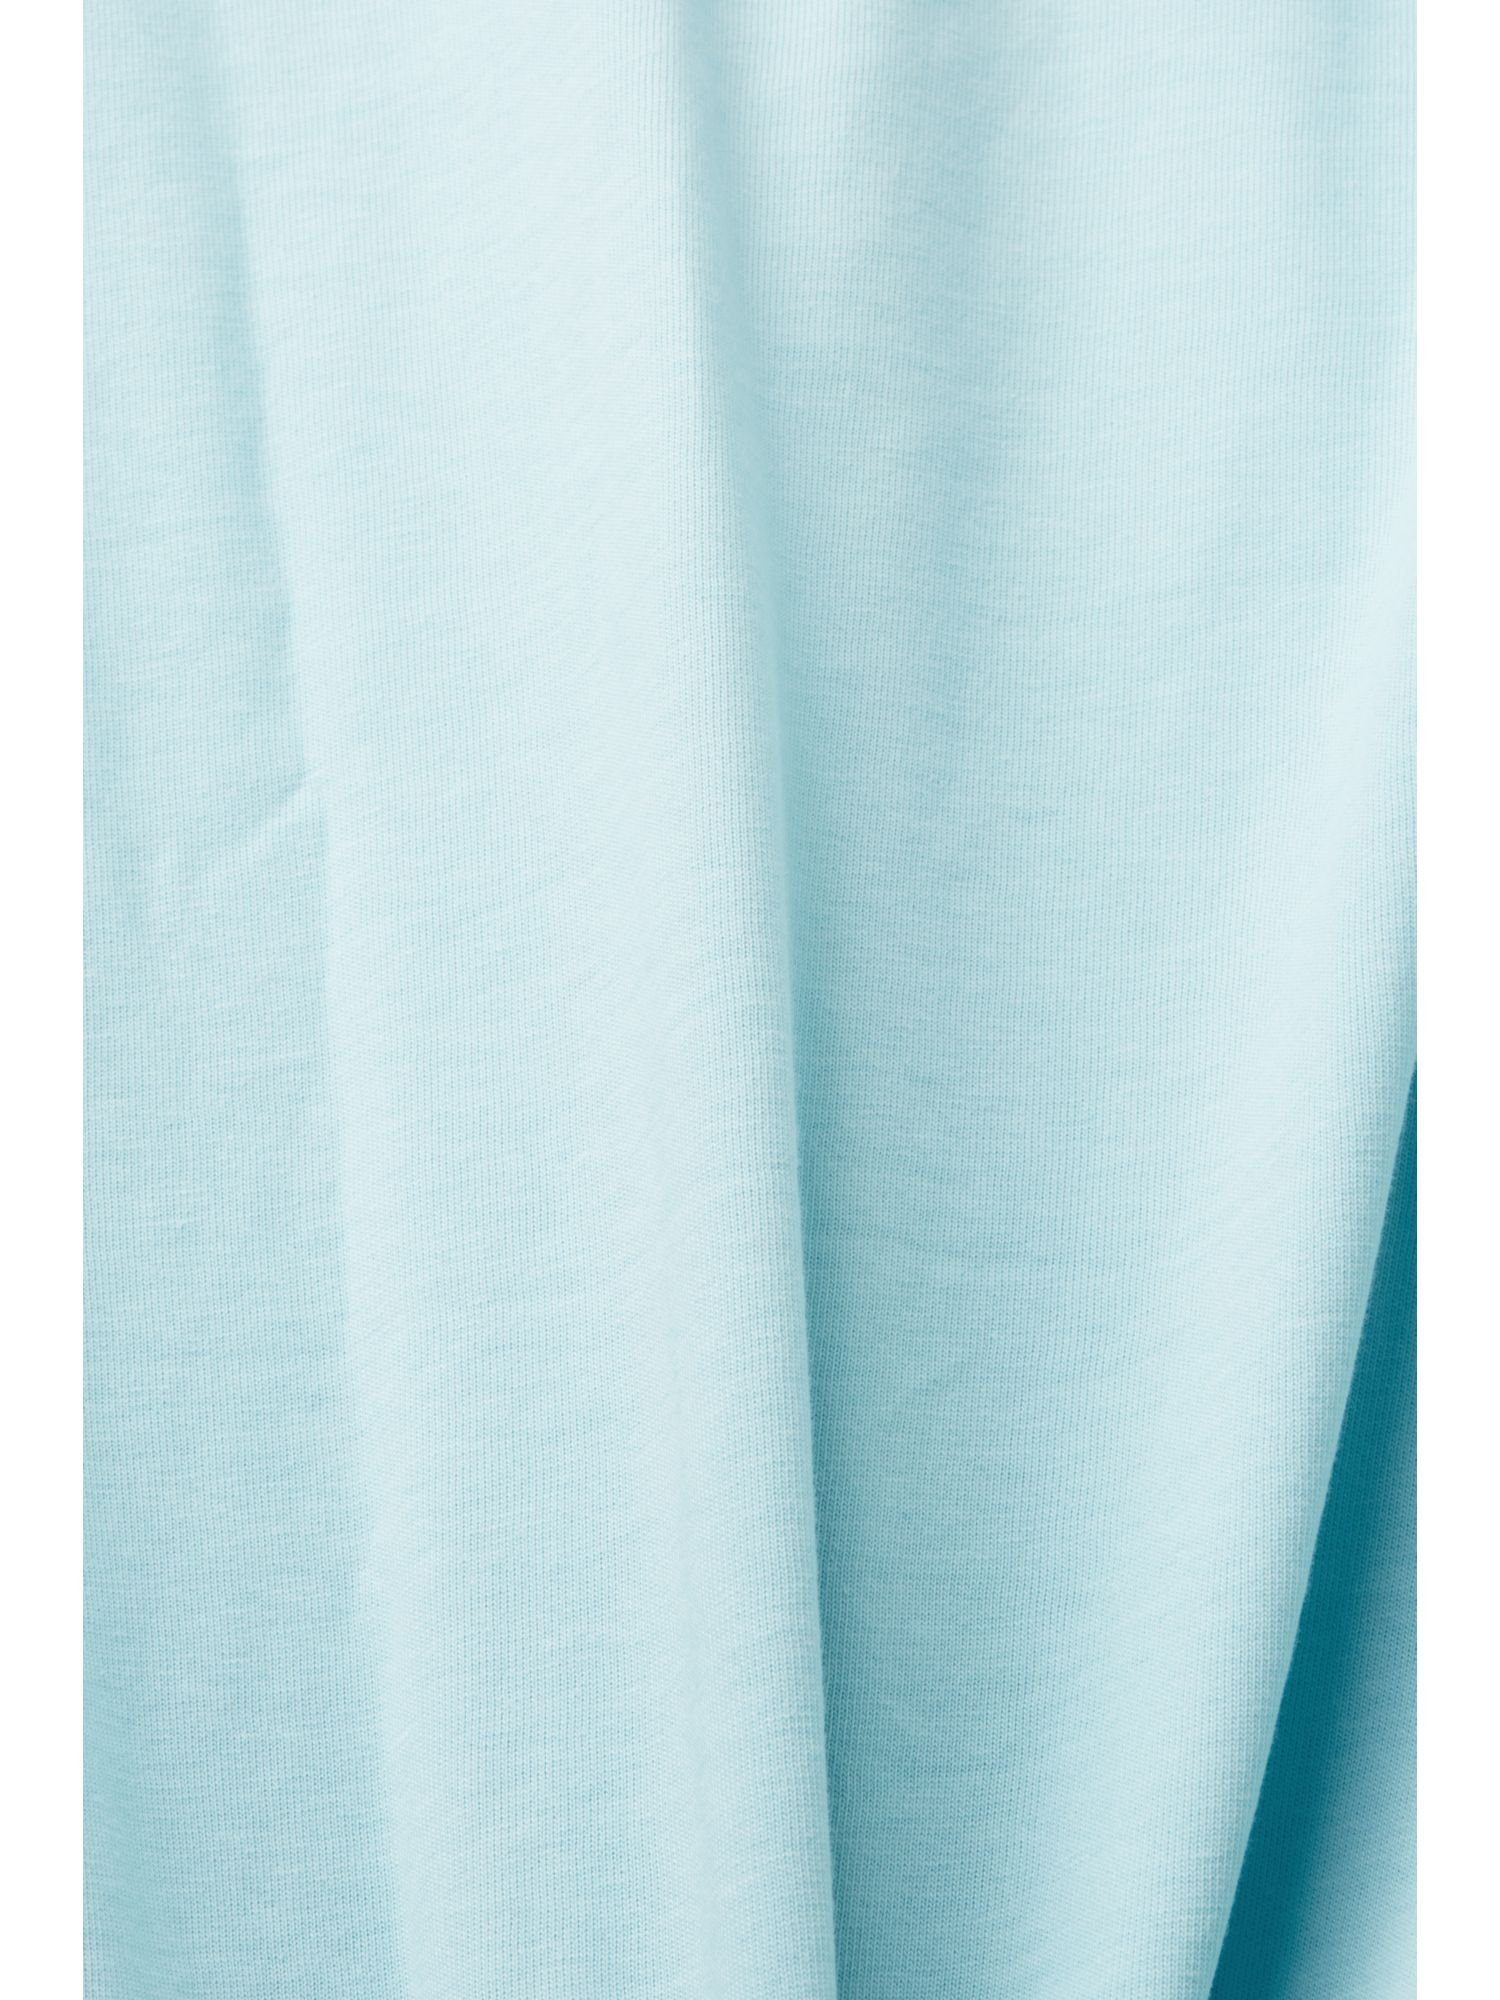 Bedrucktes TURQUOISE T-Shirt Baumwolle LIGHT Esprit 100 % Jersey-T-Shirt, (1-tlg)